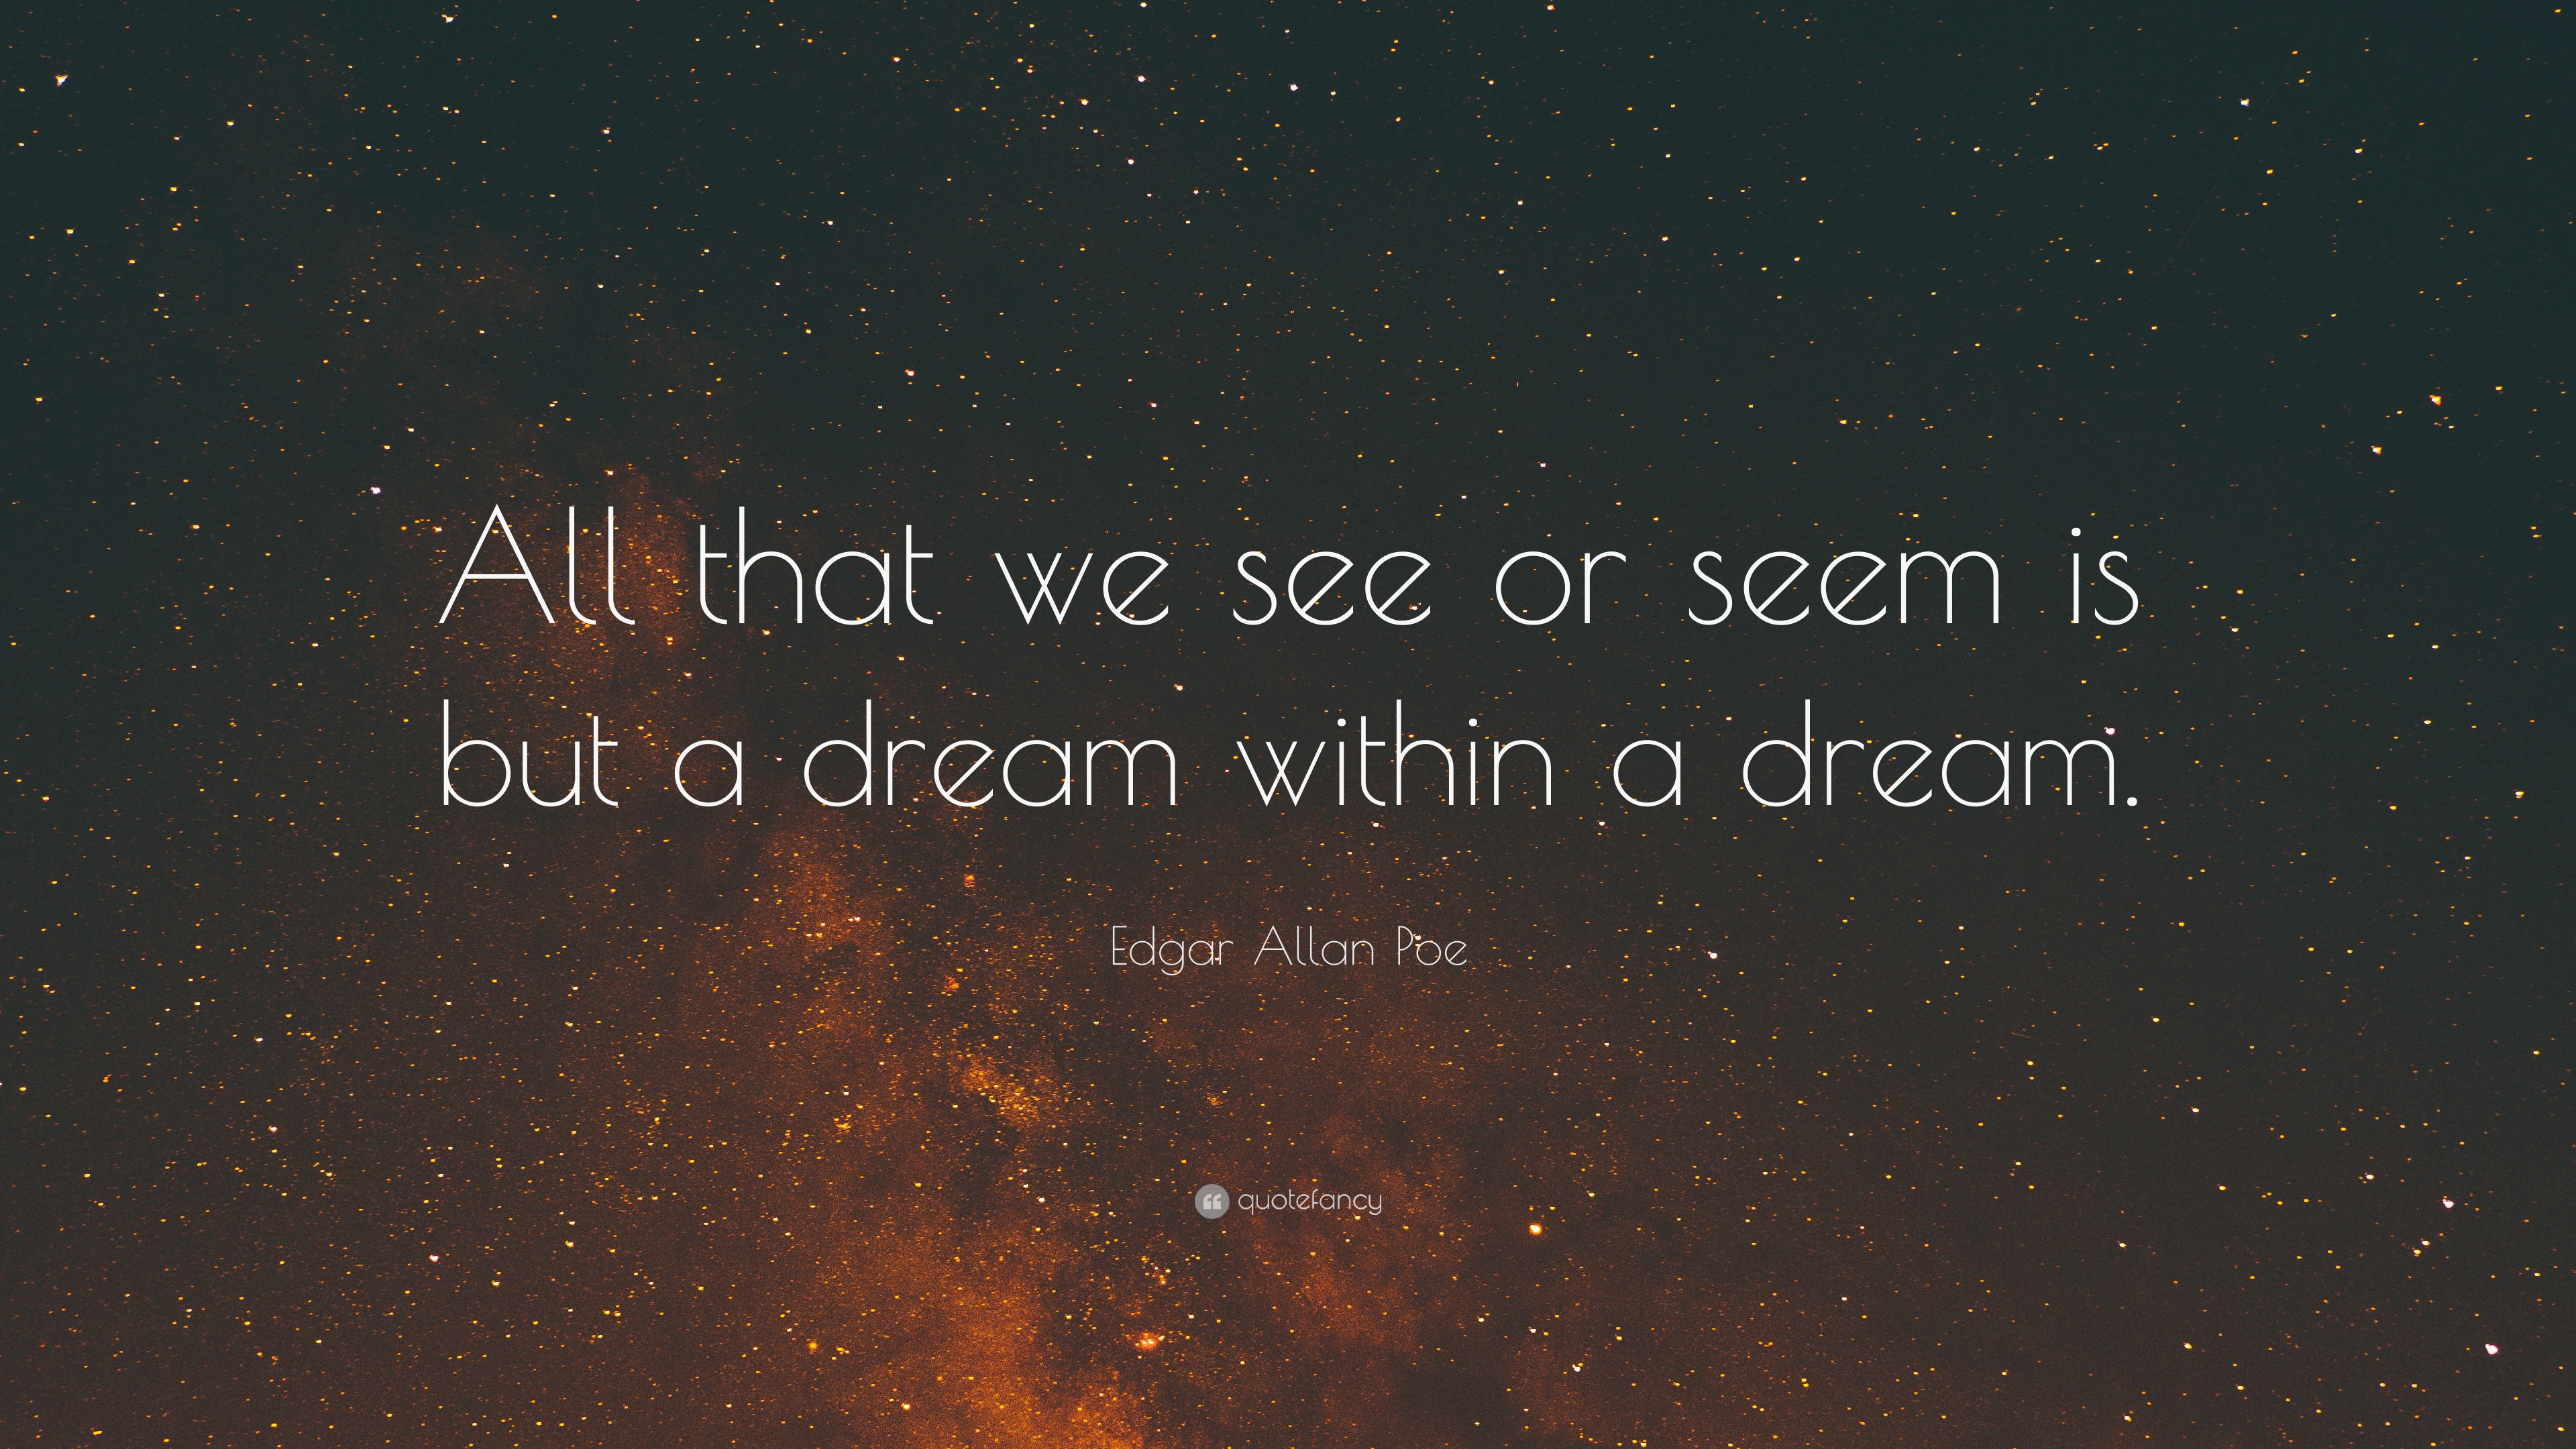 Top 400 Edgar Allan Poe Quotes (2023 Update) - Quotefancy